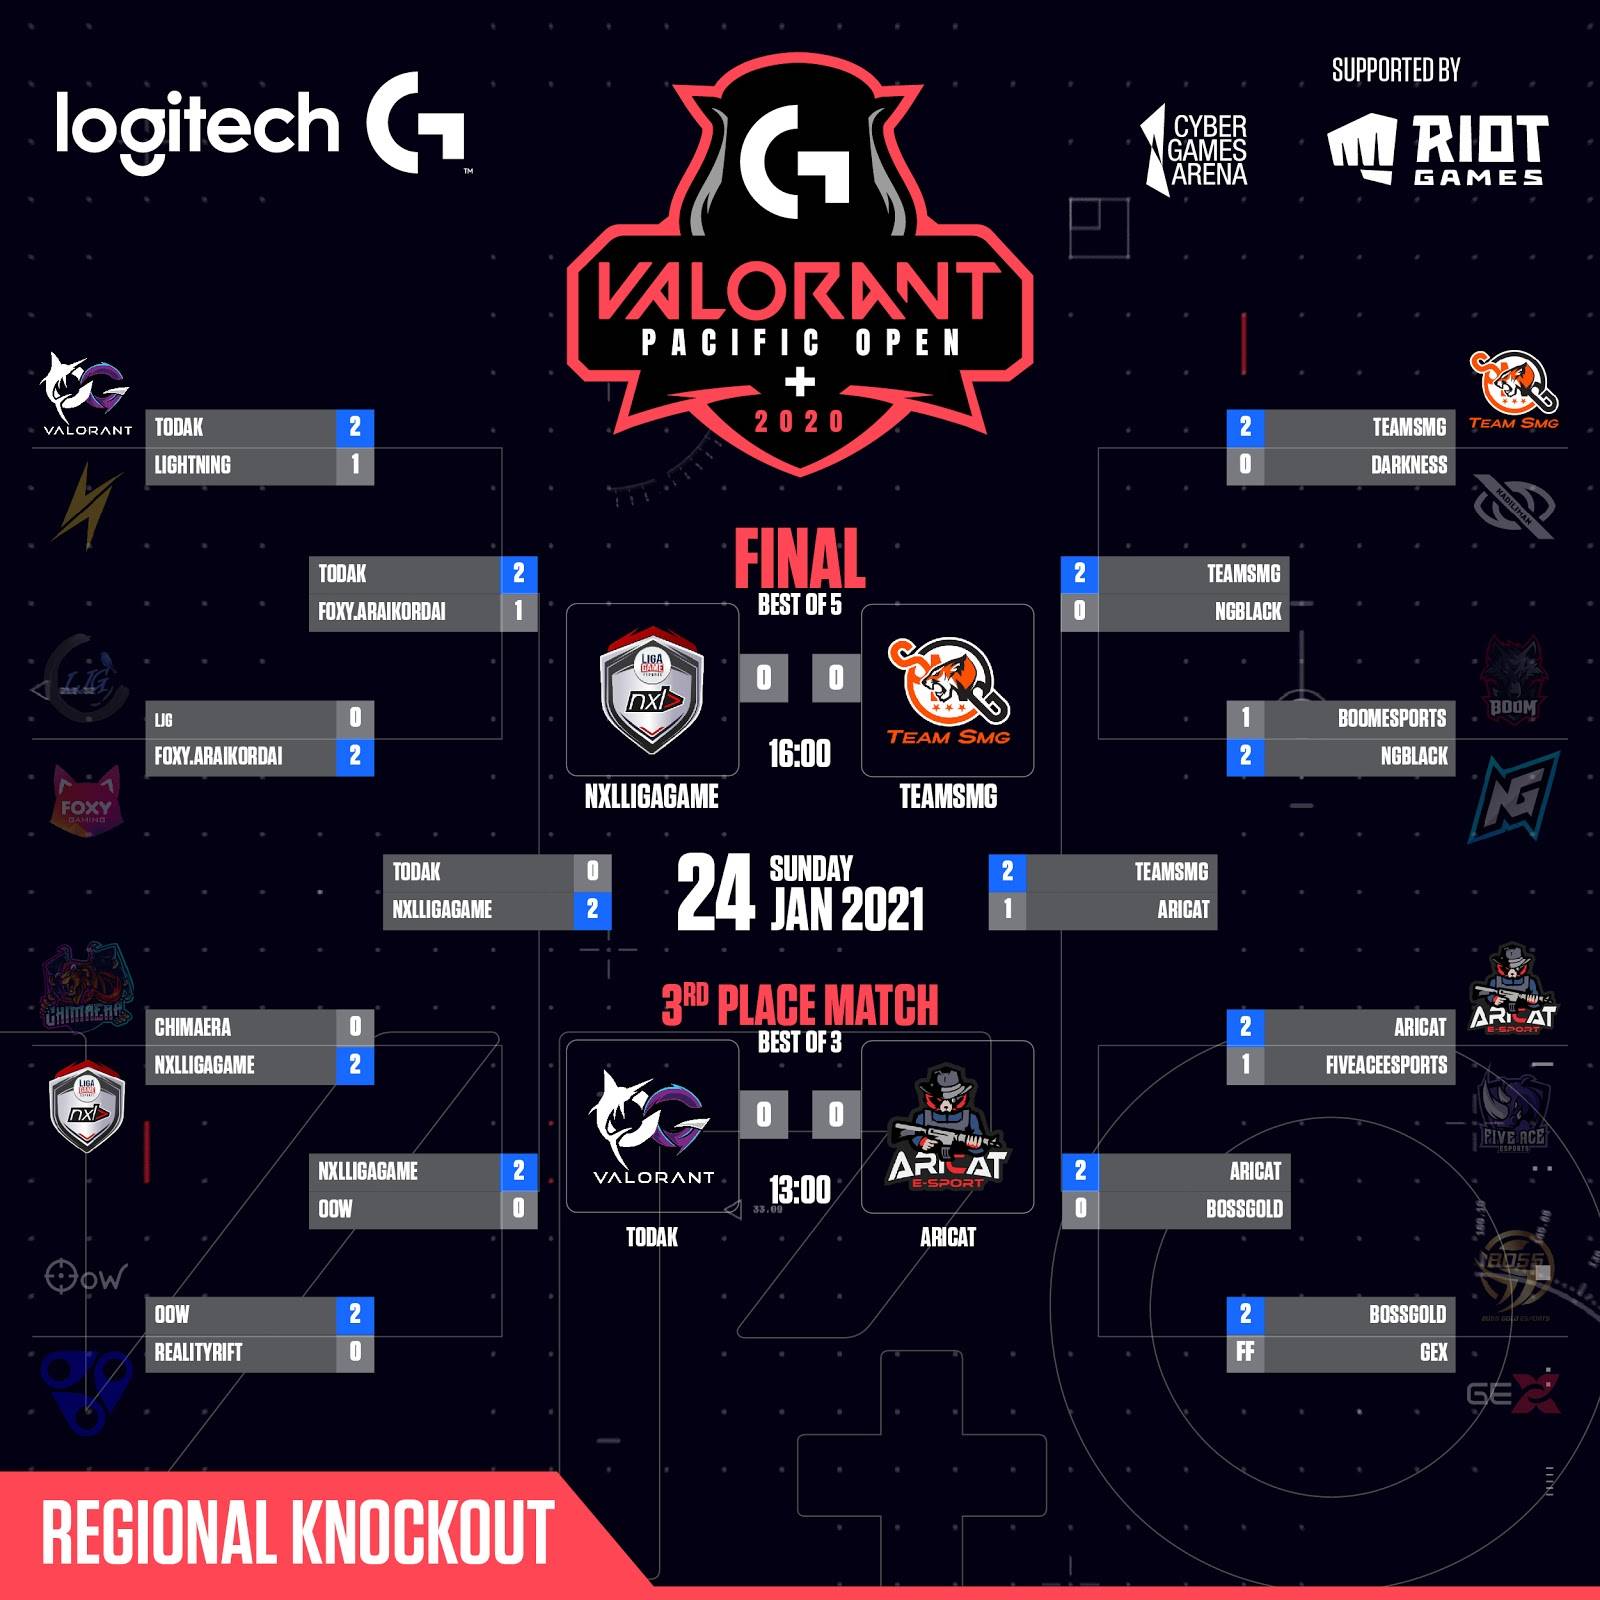 Logitech G 全力支持：東南亞區比賽 《Logitech G VALORANT Pacific Open+》比賽正進行得如火如荼 即將揭曉最終王者